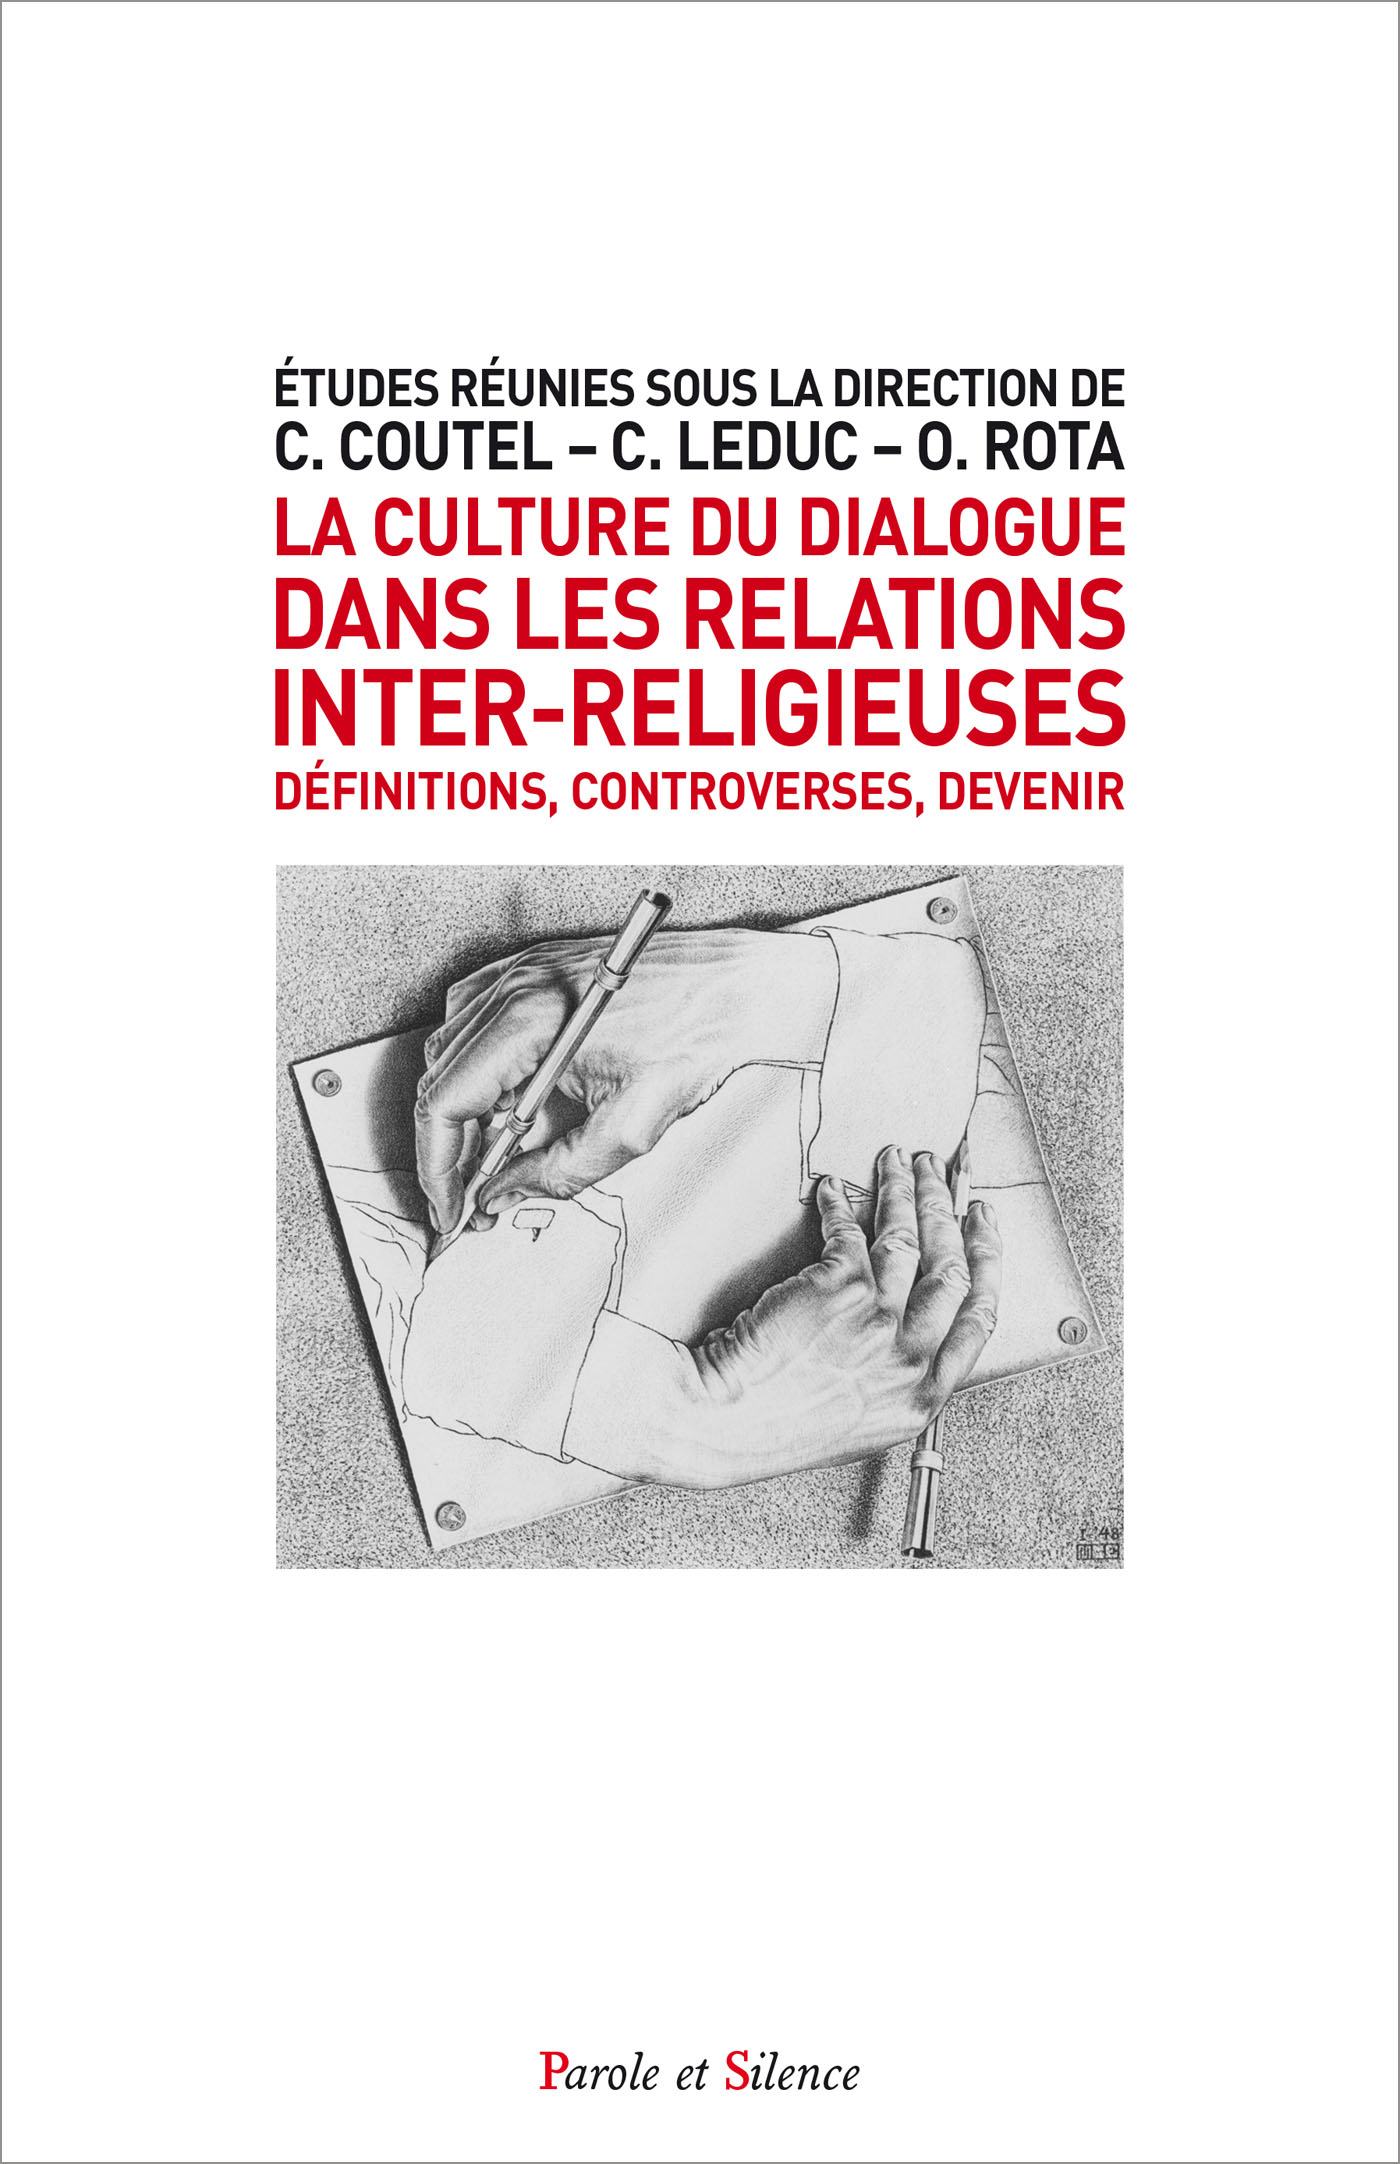 La culture du dialogue dans les relations inter-religieuses